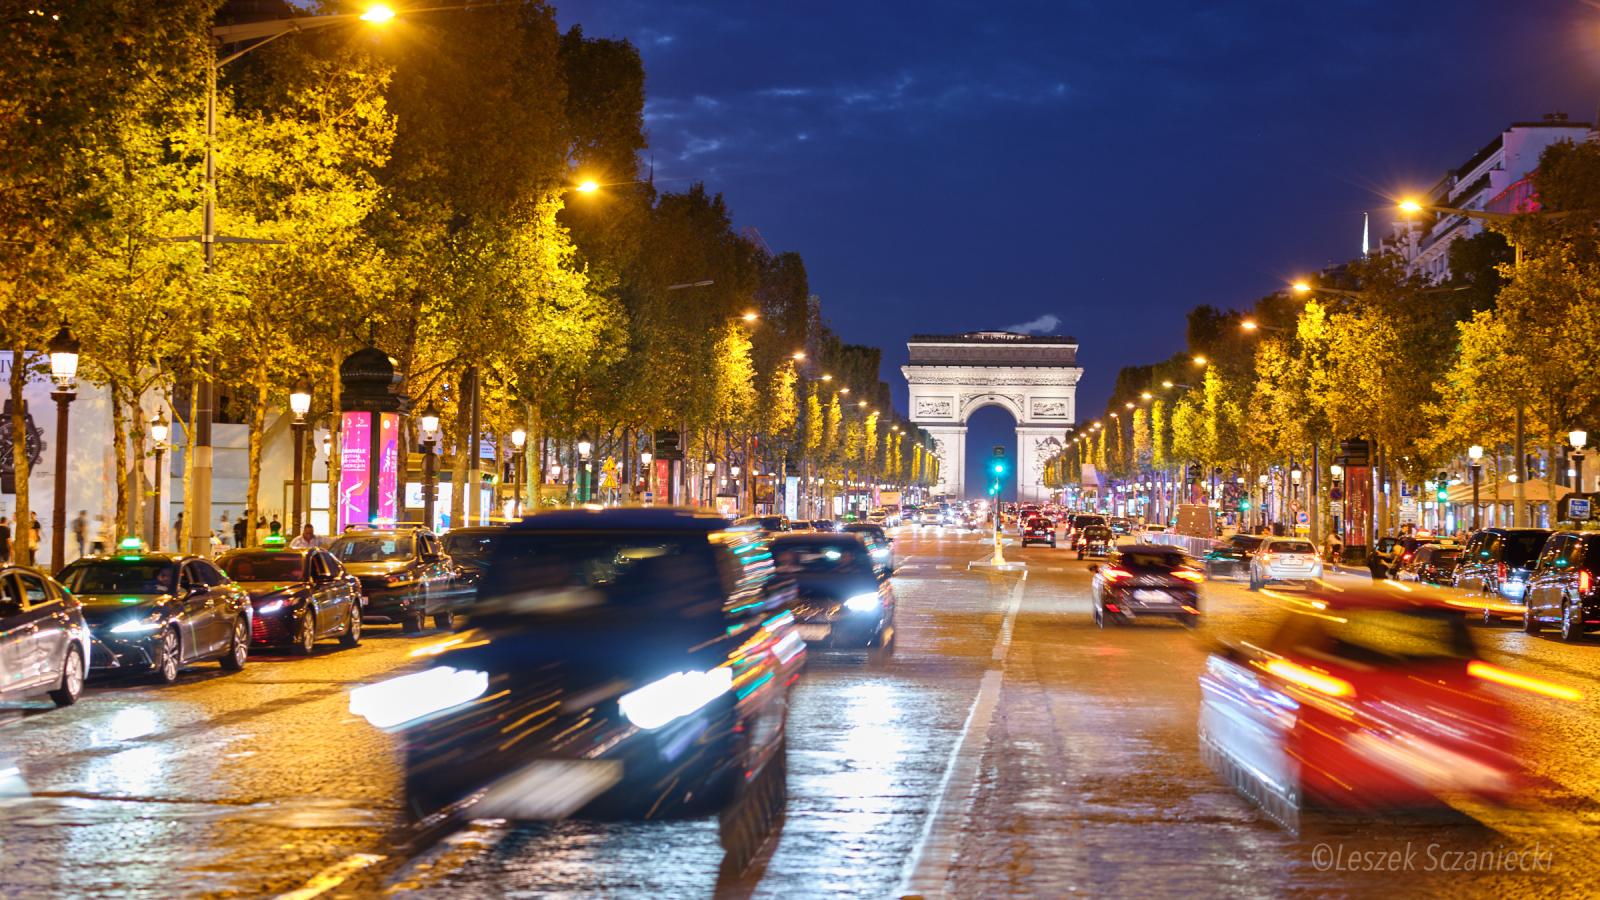 The Arc de Triomphe &amp; the Champs Elysées